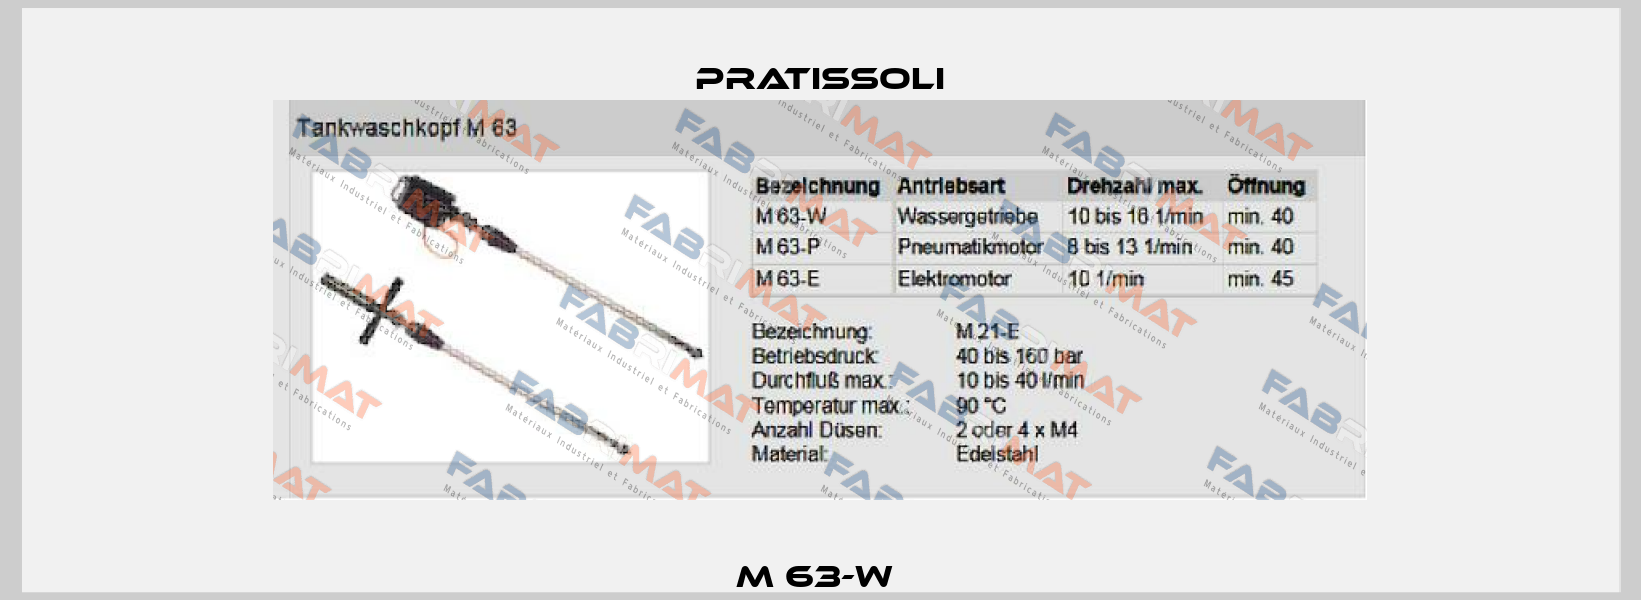 M 63-W  Pratissoli